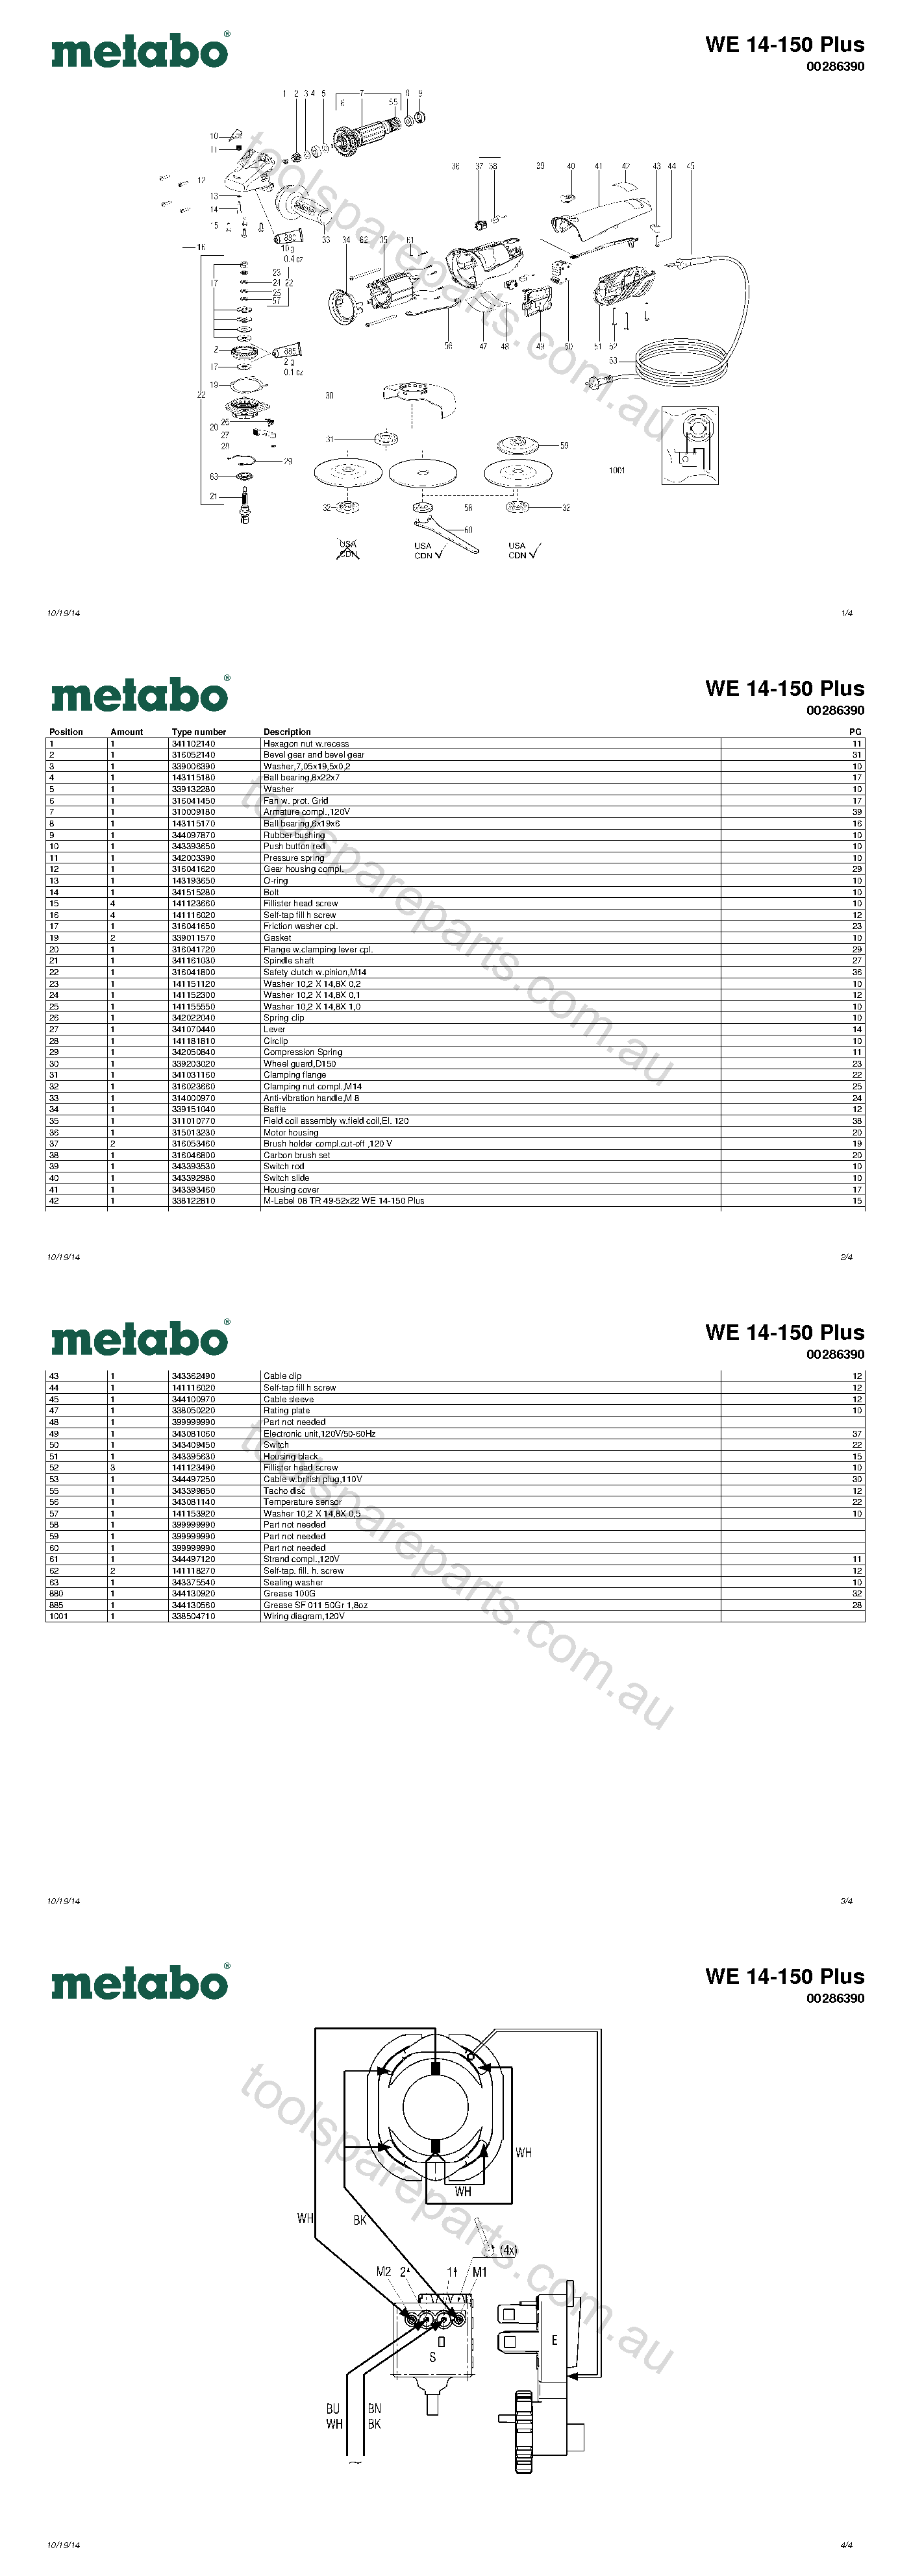 Metabo WE 14-150 Plus 00286390  Diagram 1